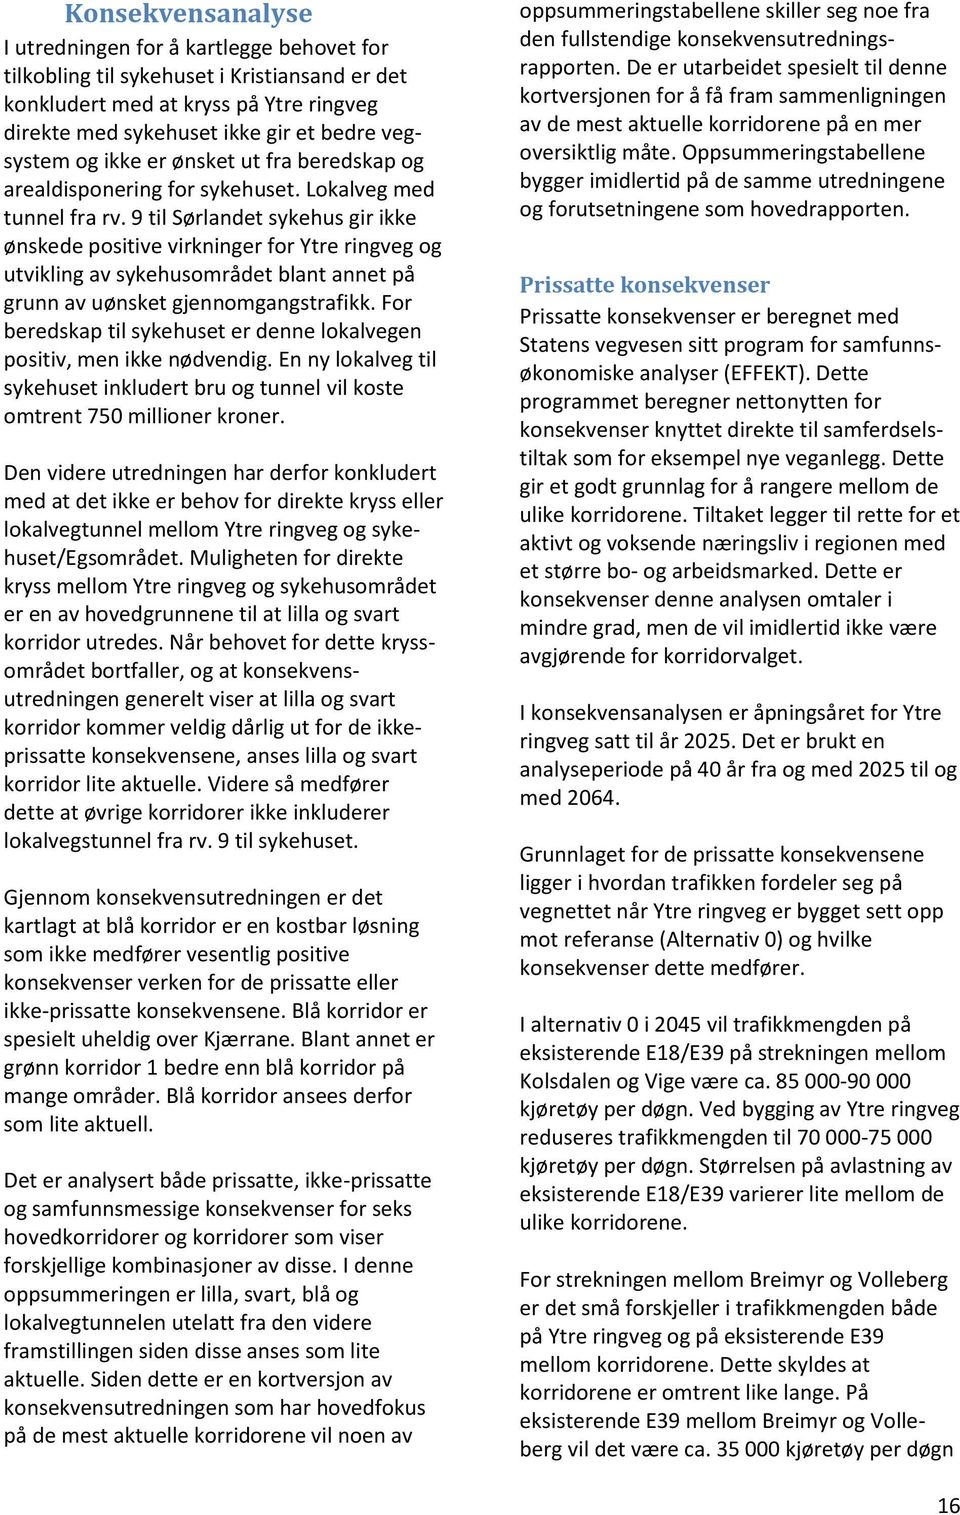 9 til Sørlandet sykehus gir ikke ønskede positive virkninger for Ytre ringveg og utvikling av sykehusområdet blant annet på grunn av uønsket gjennomgangstrafikk.